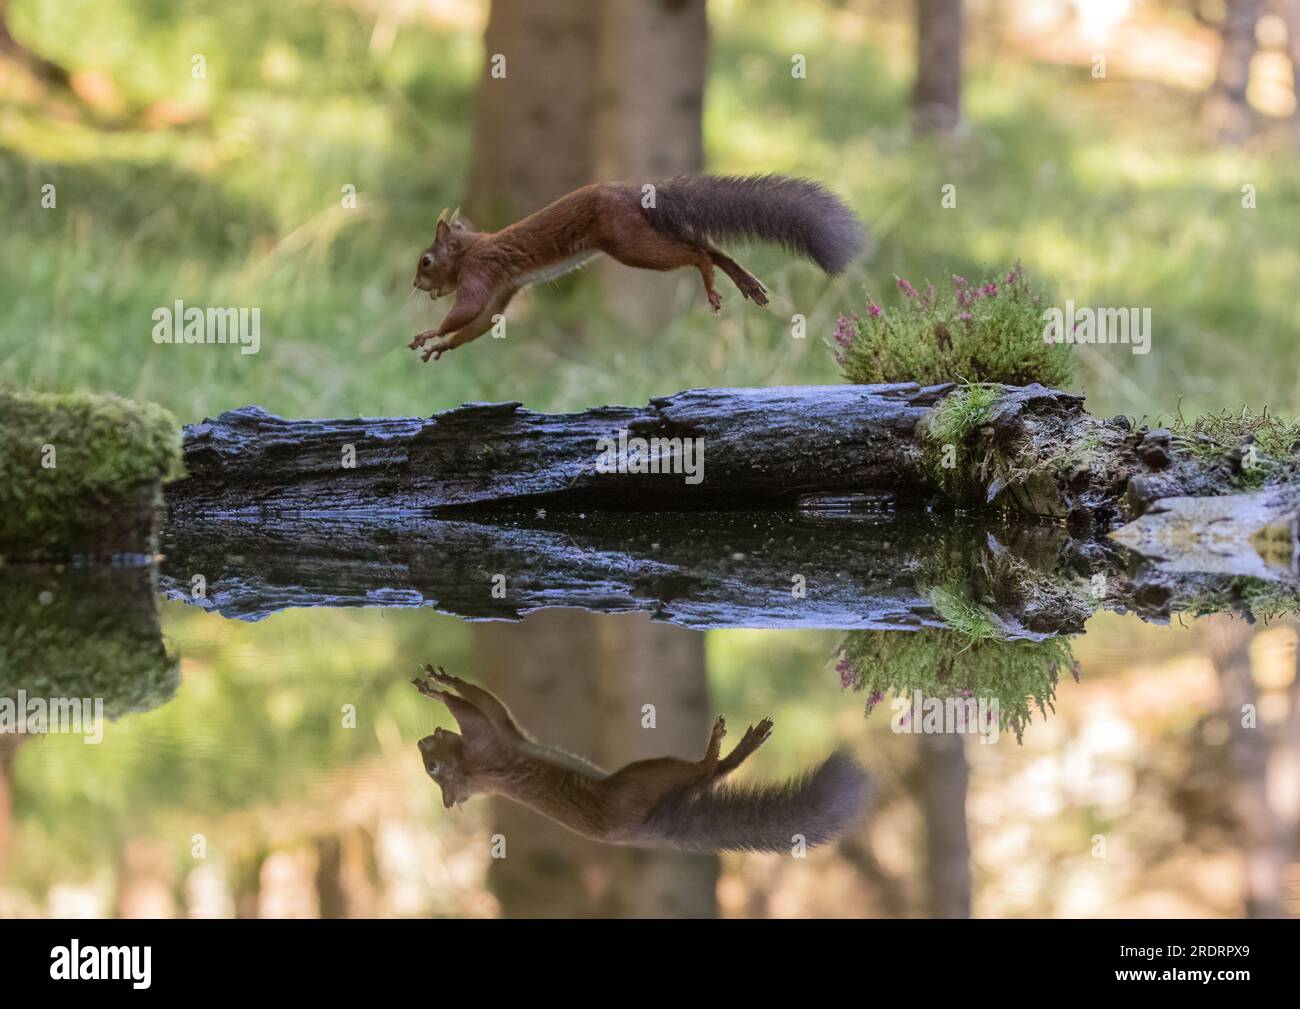 Uno scoiattolo rosso raro ( Sciurus vulgaris ) sorpreso a saltare in aria lungo un tronco di mossy . Un'immagine speculare viene riflessa nell'acqua sottostante. Yorkshire, Regno Unito. Foto Stock